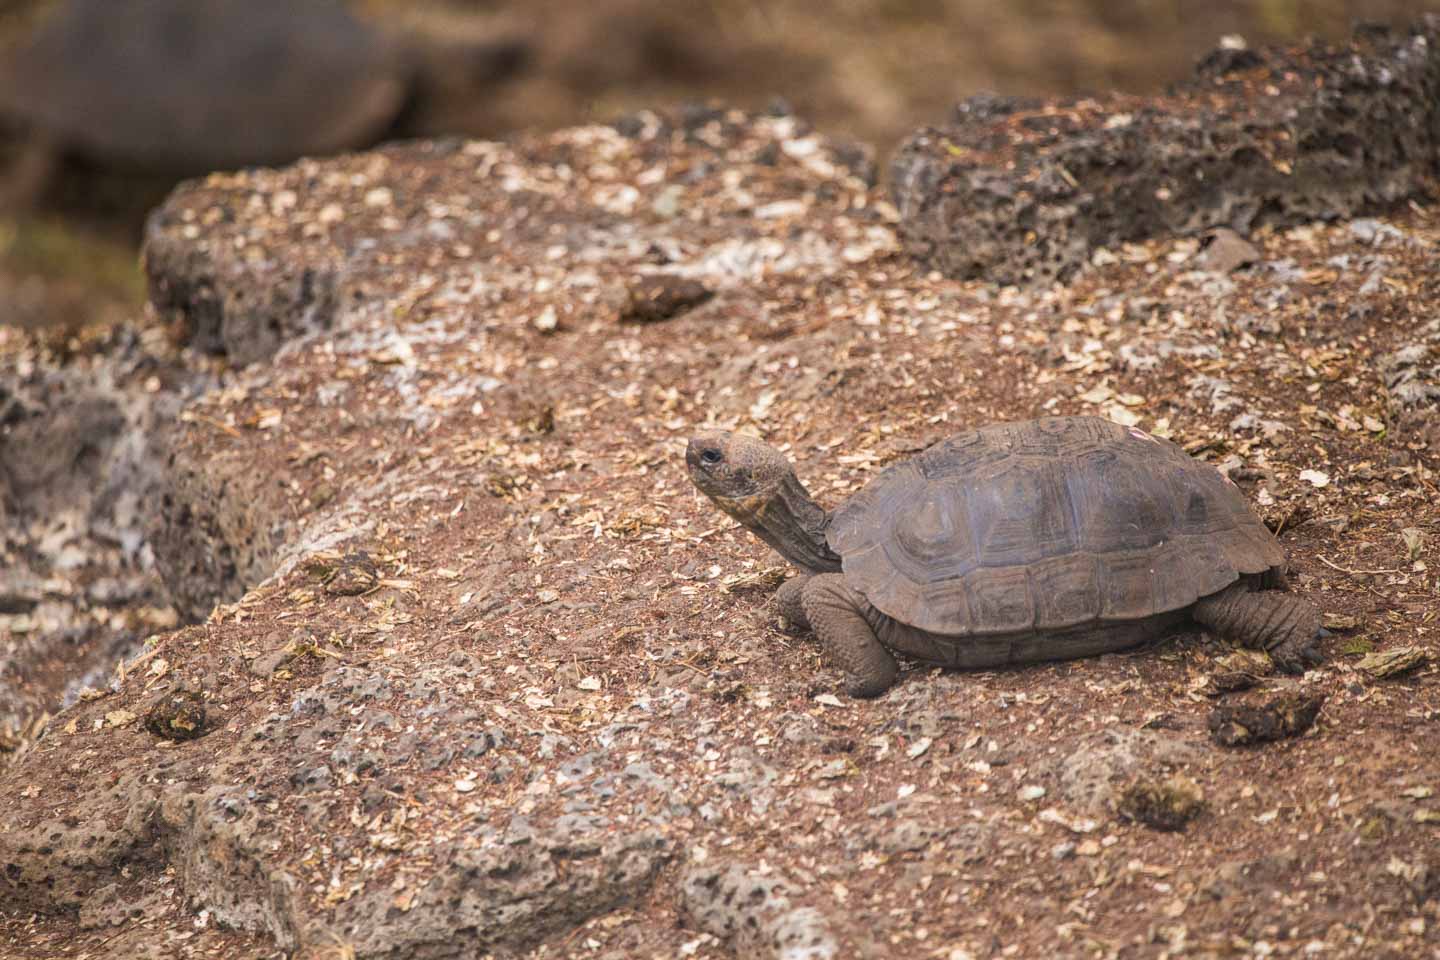 Baby giant tortoise at the Fausto Ilerena Breeding Center, Santa Cruz Island, Galápagos Islands, Ecuador